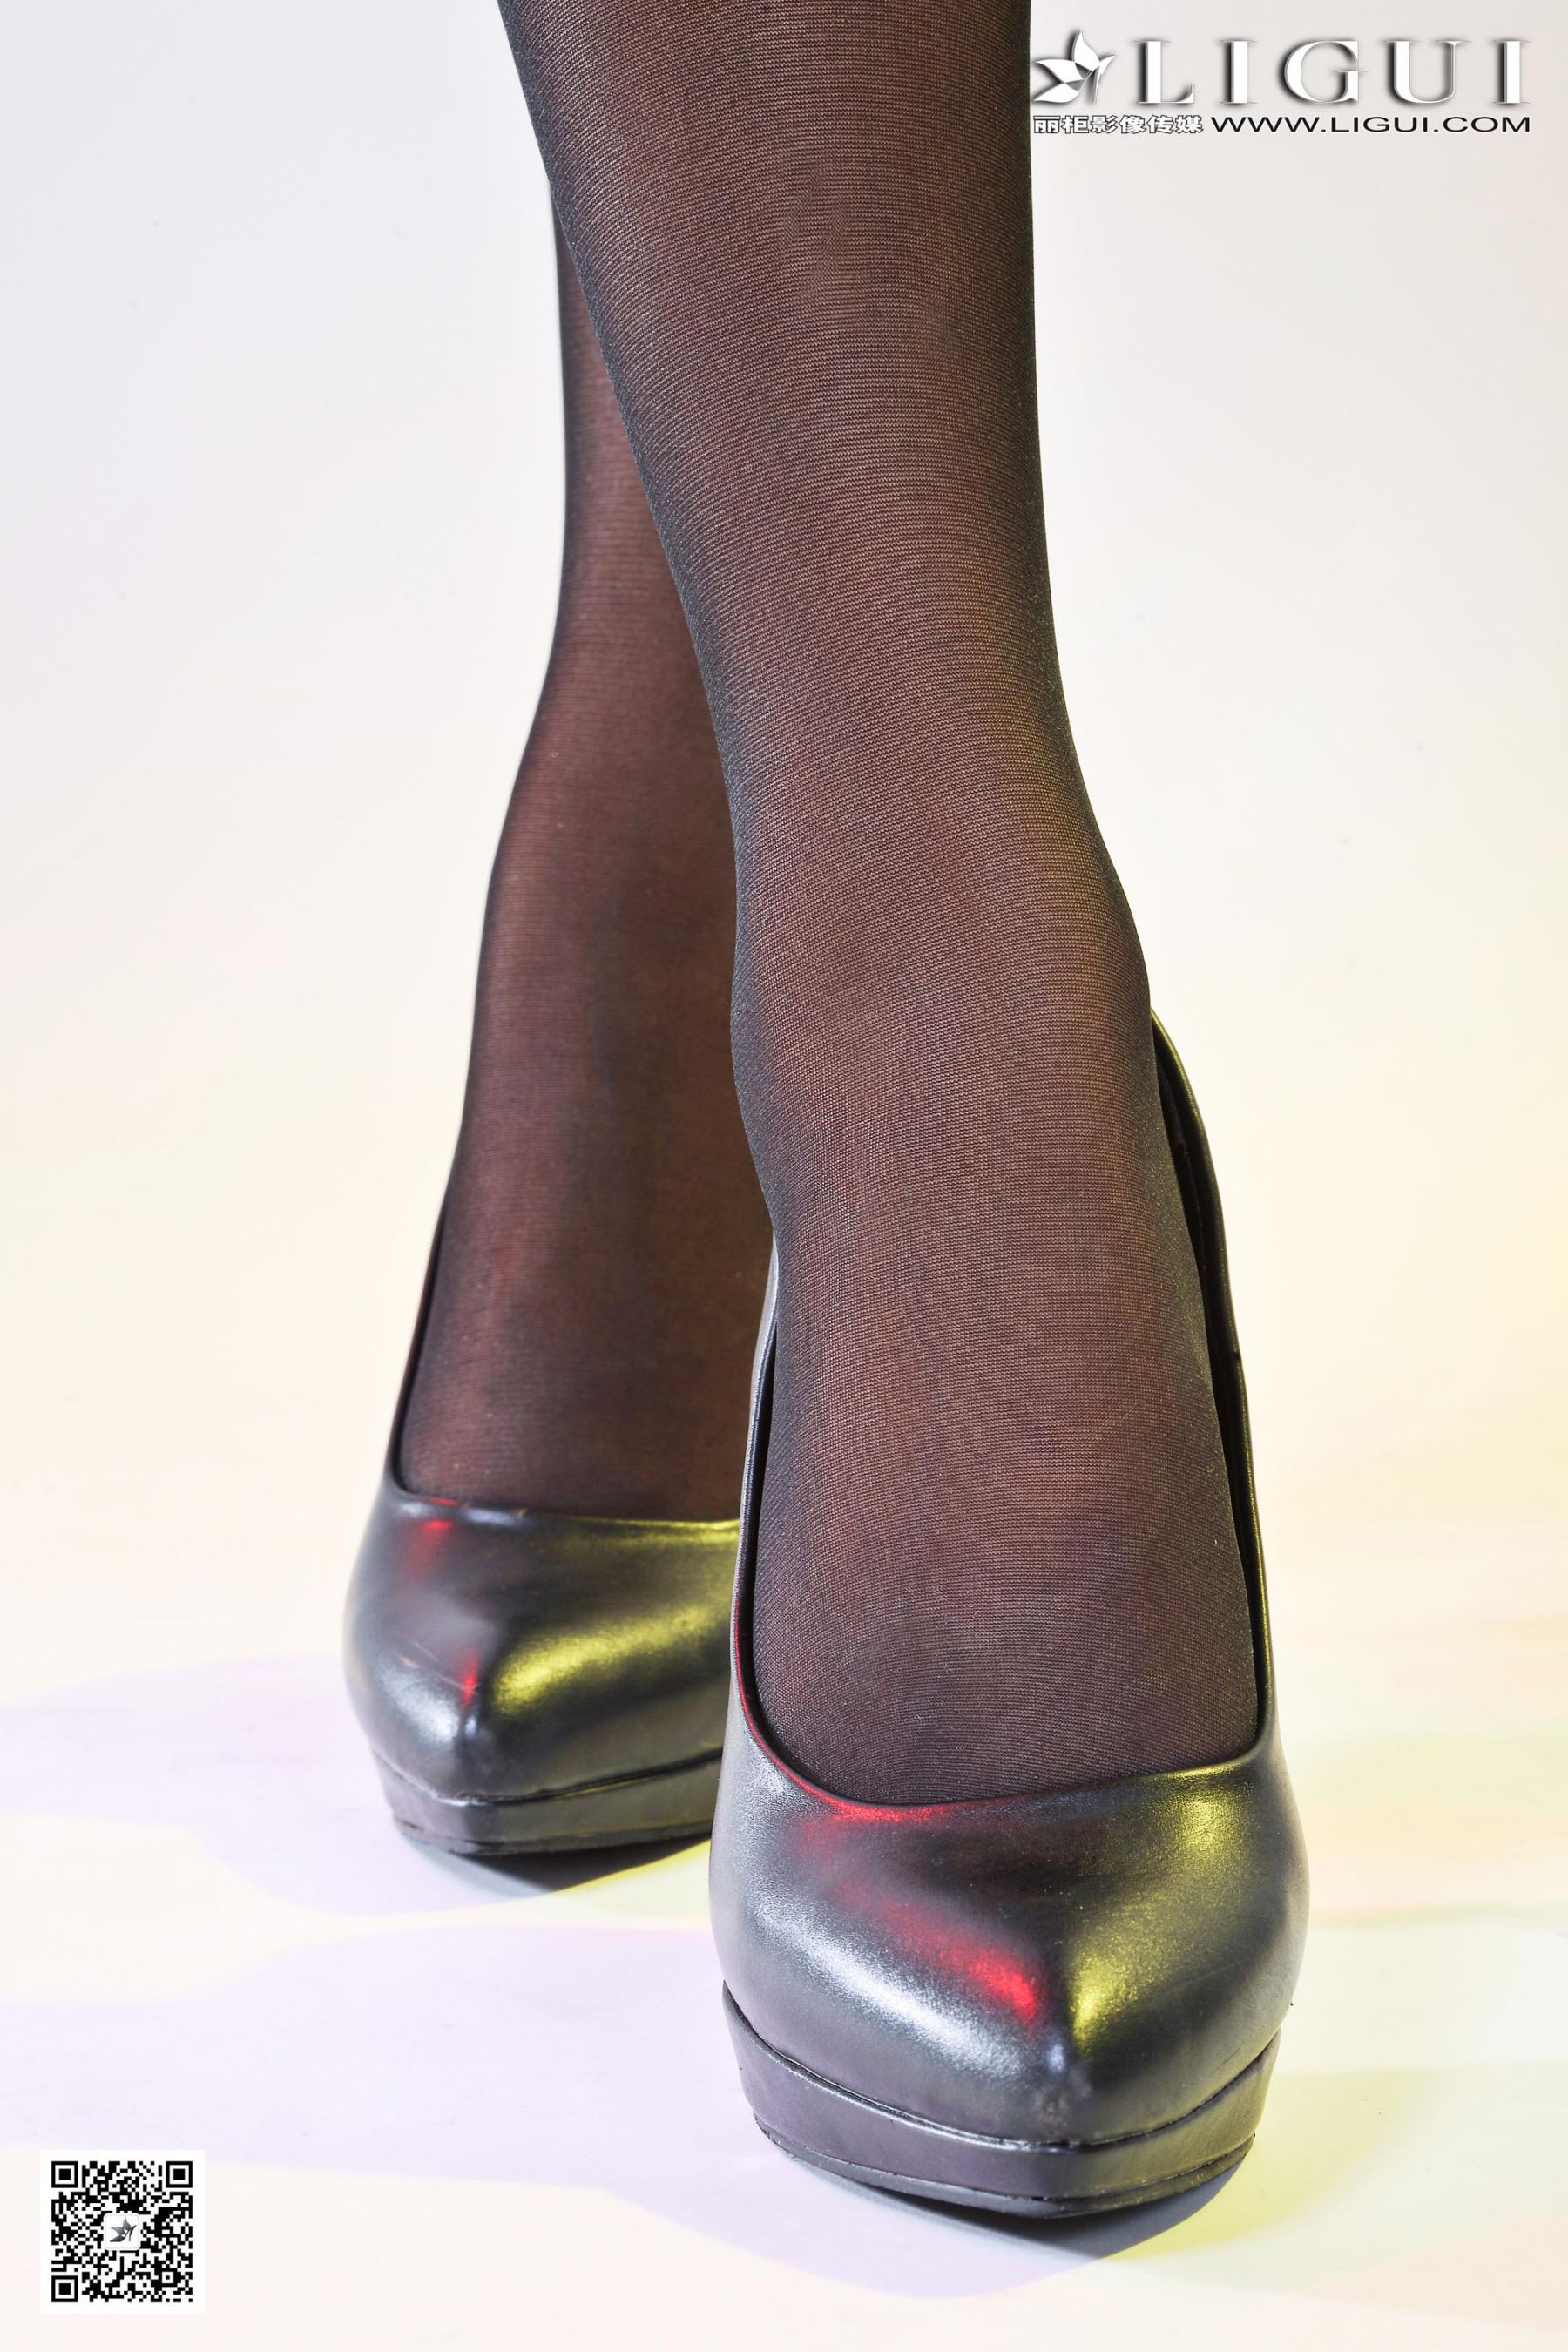 [柜 liGUI] Model slight “kimono black silk beauty” beautiful leg jade foot picture